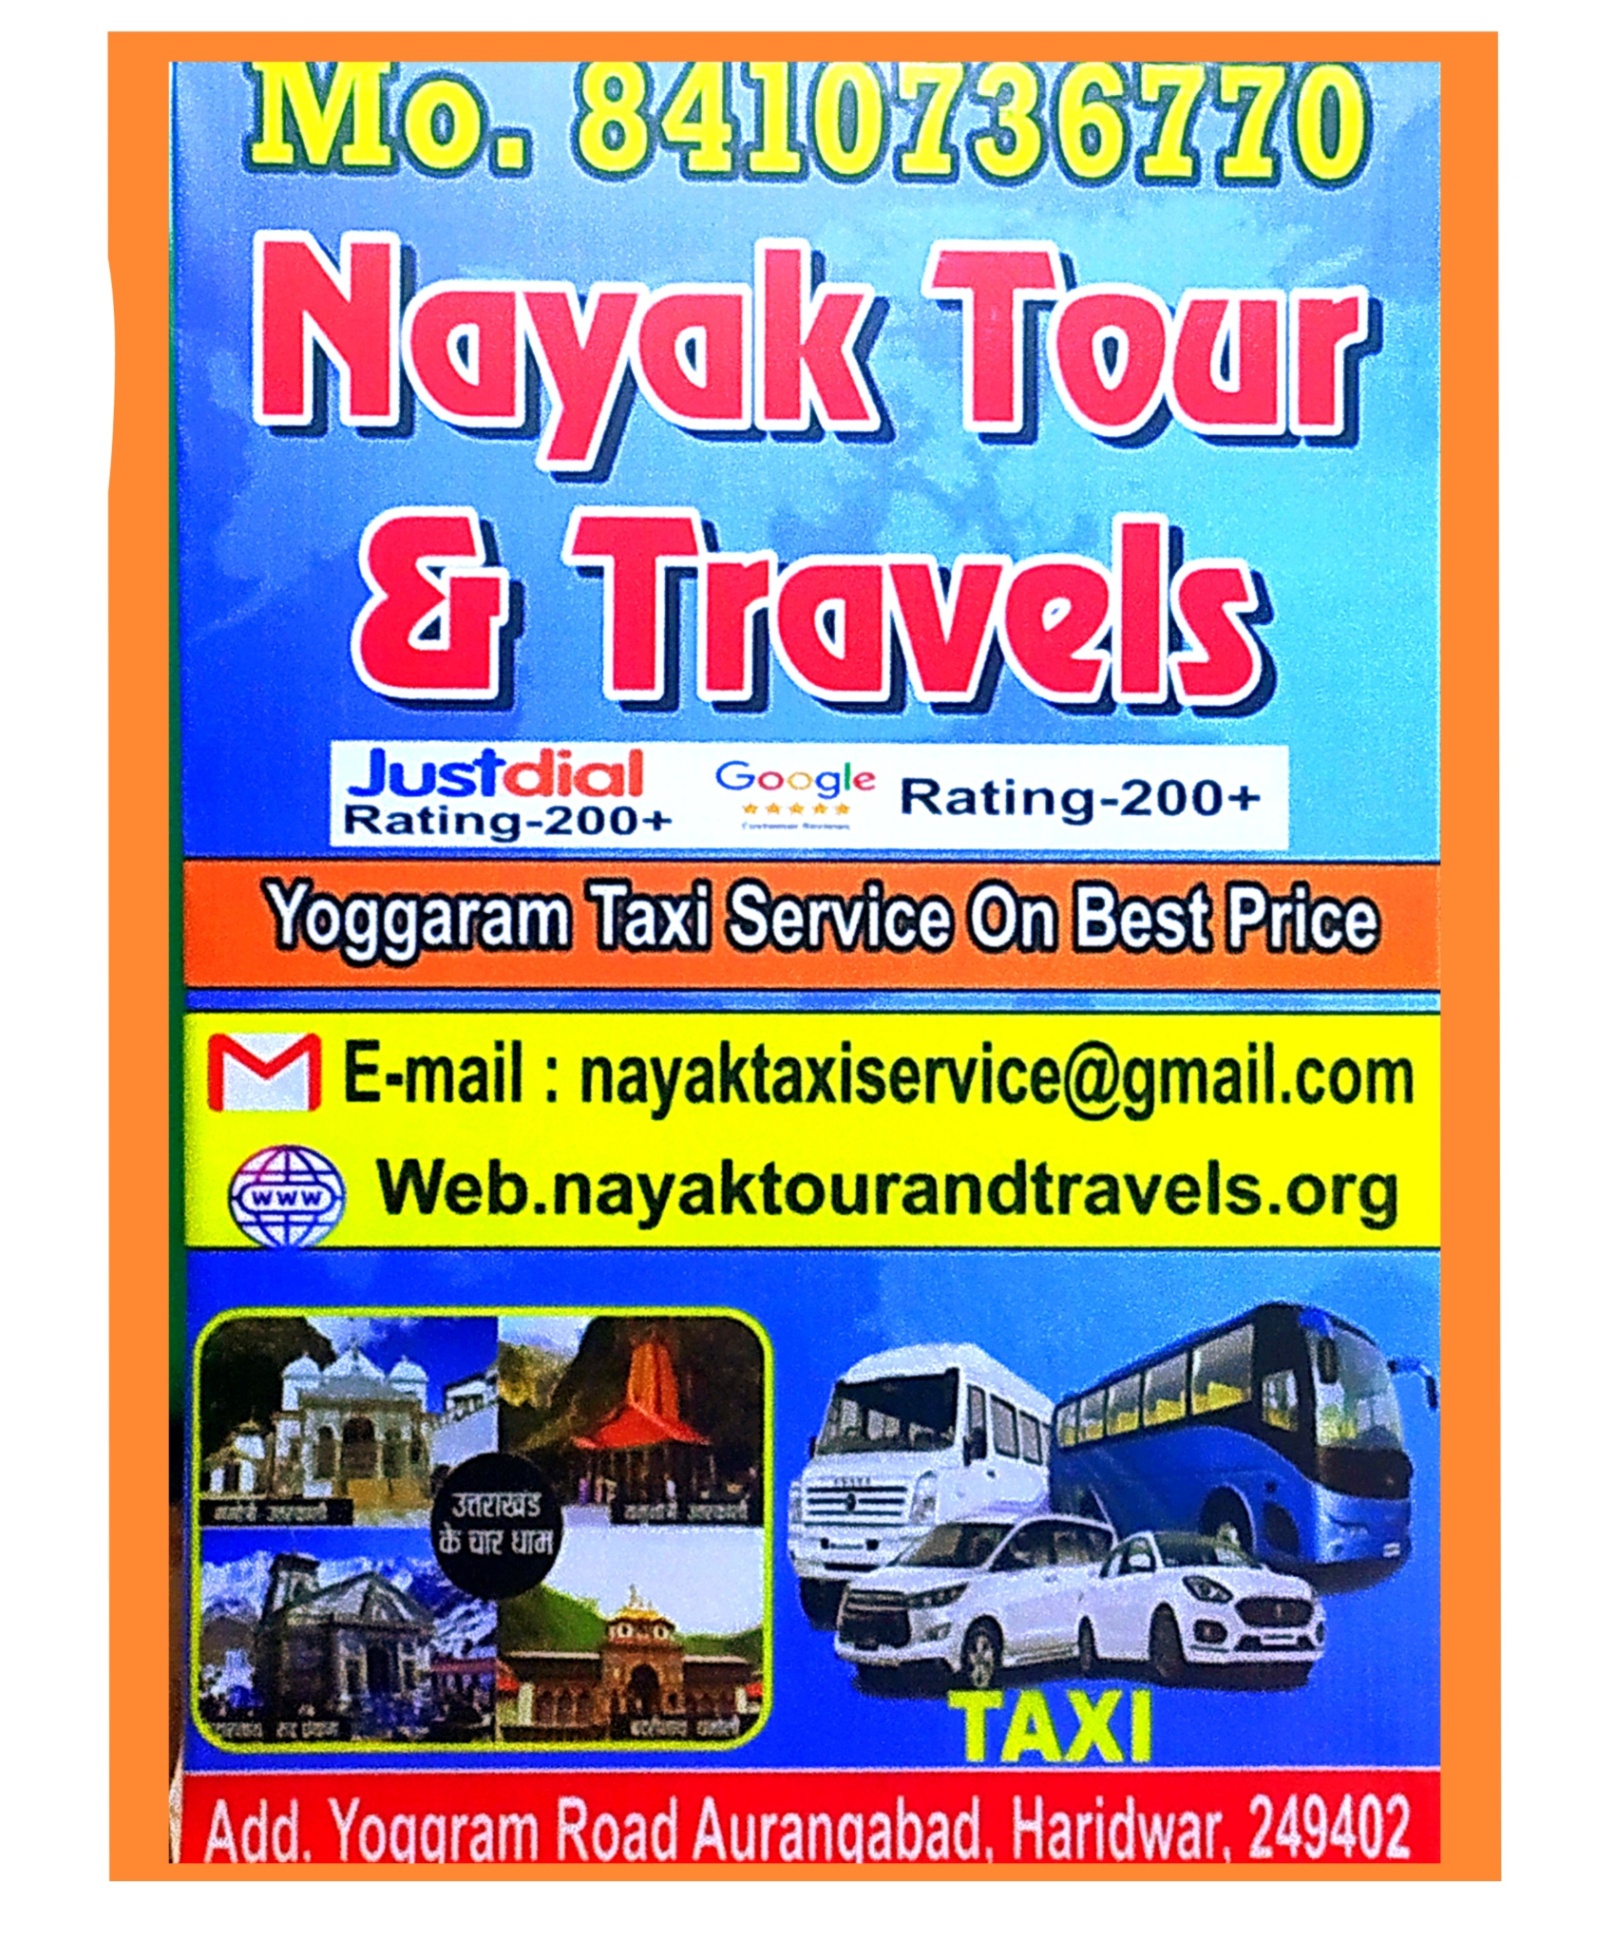 Taxi service in Haridwar 8410736770